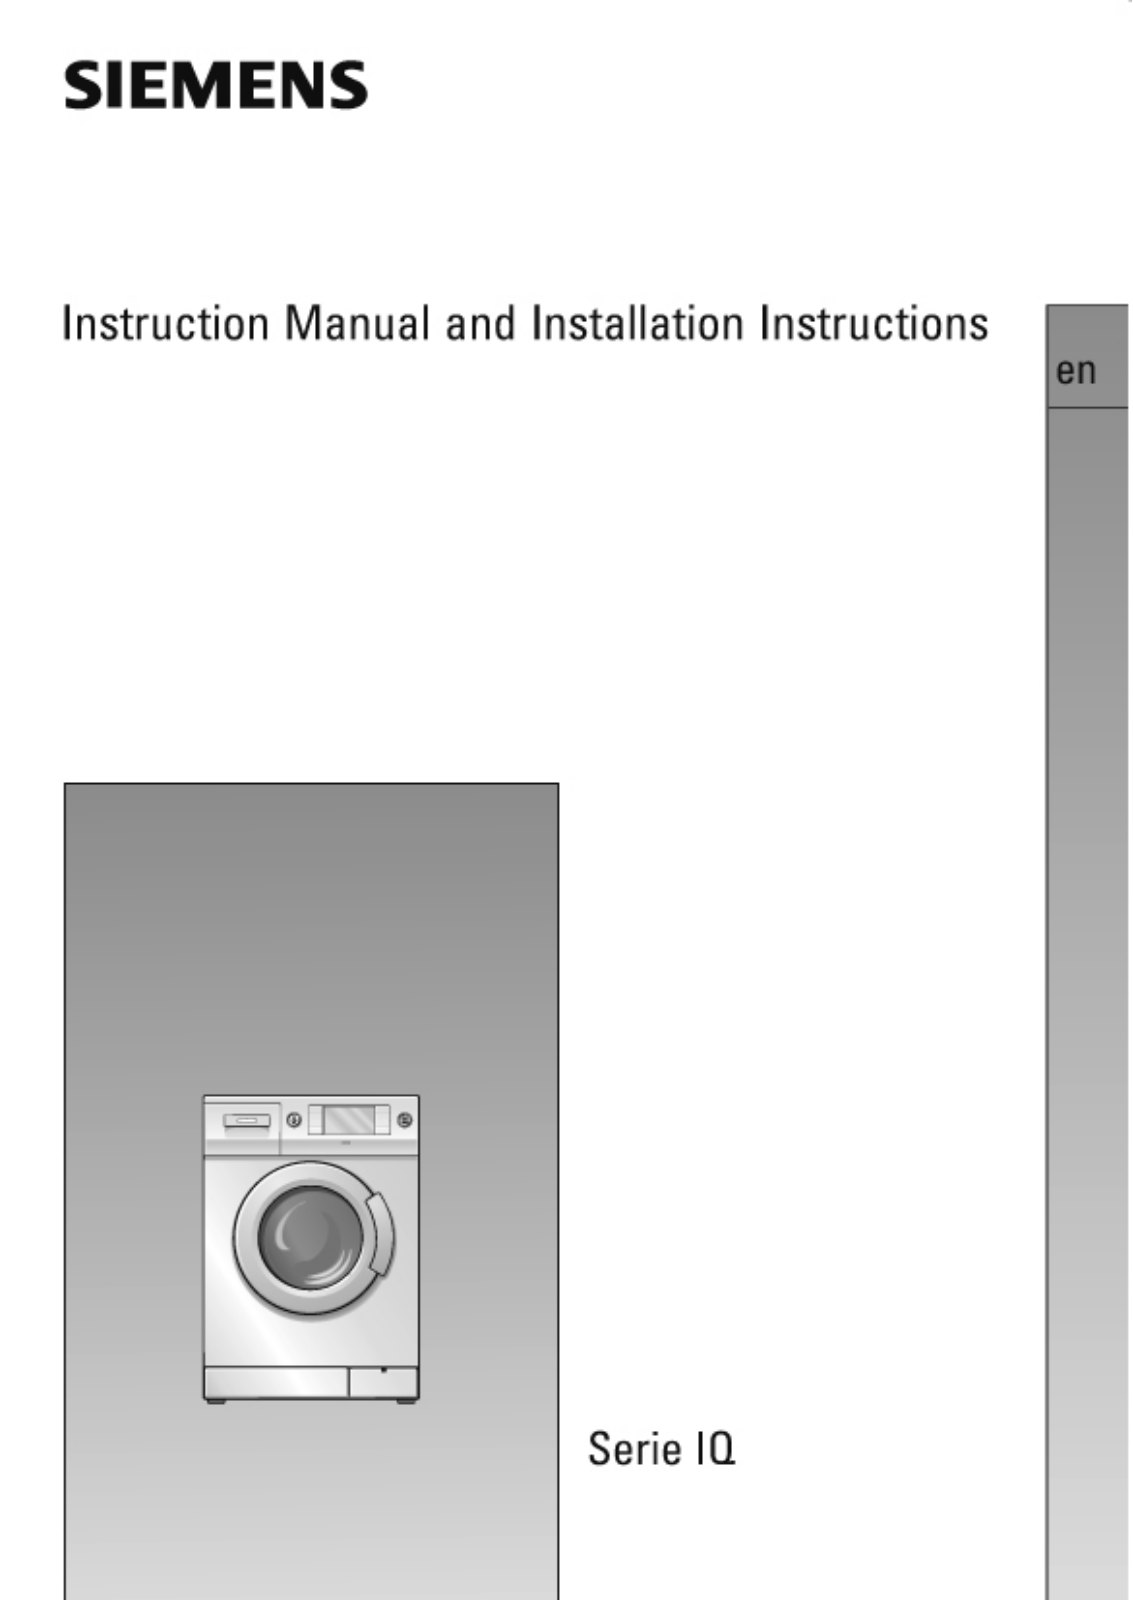 Siemens IQ1630 Instructions Manual